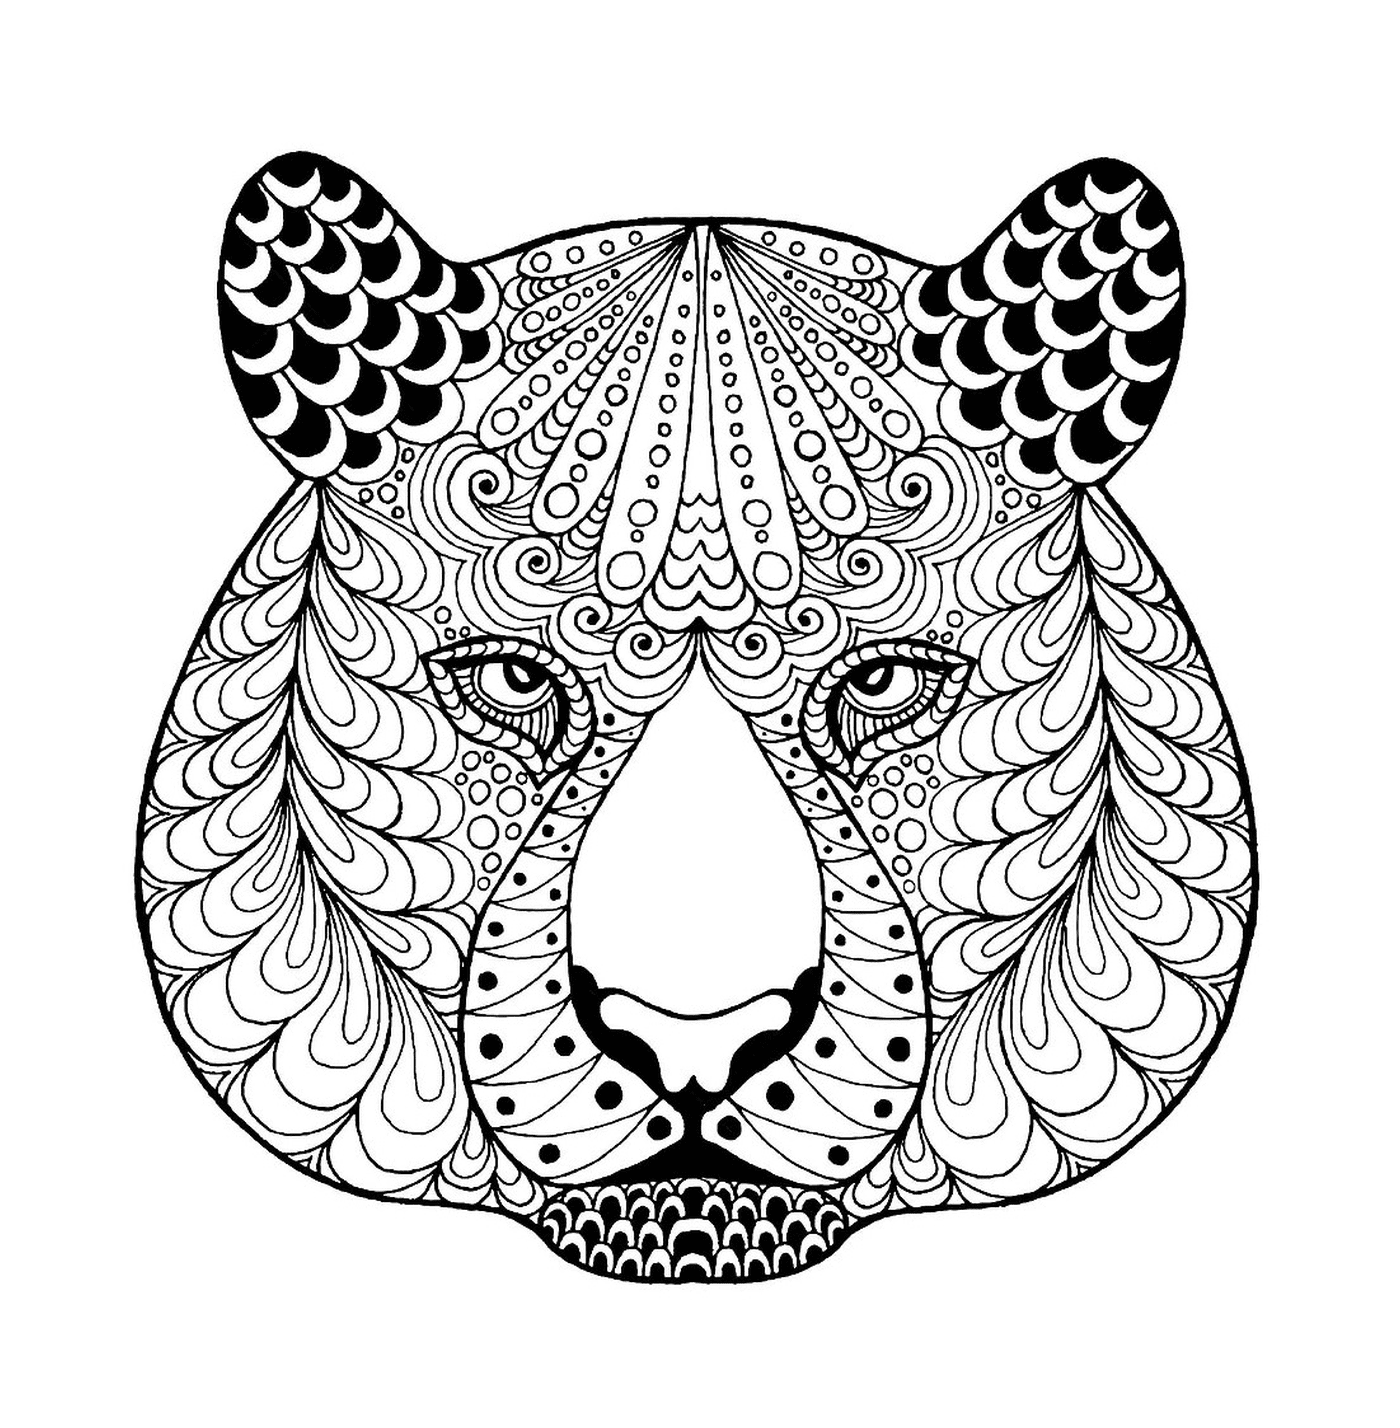  पैटर्नों के साथ एक आड़ी बाघ सिर 